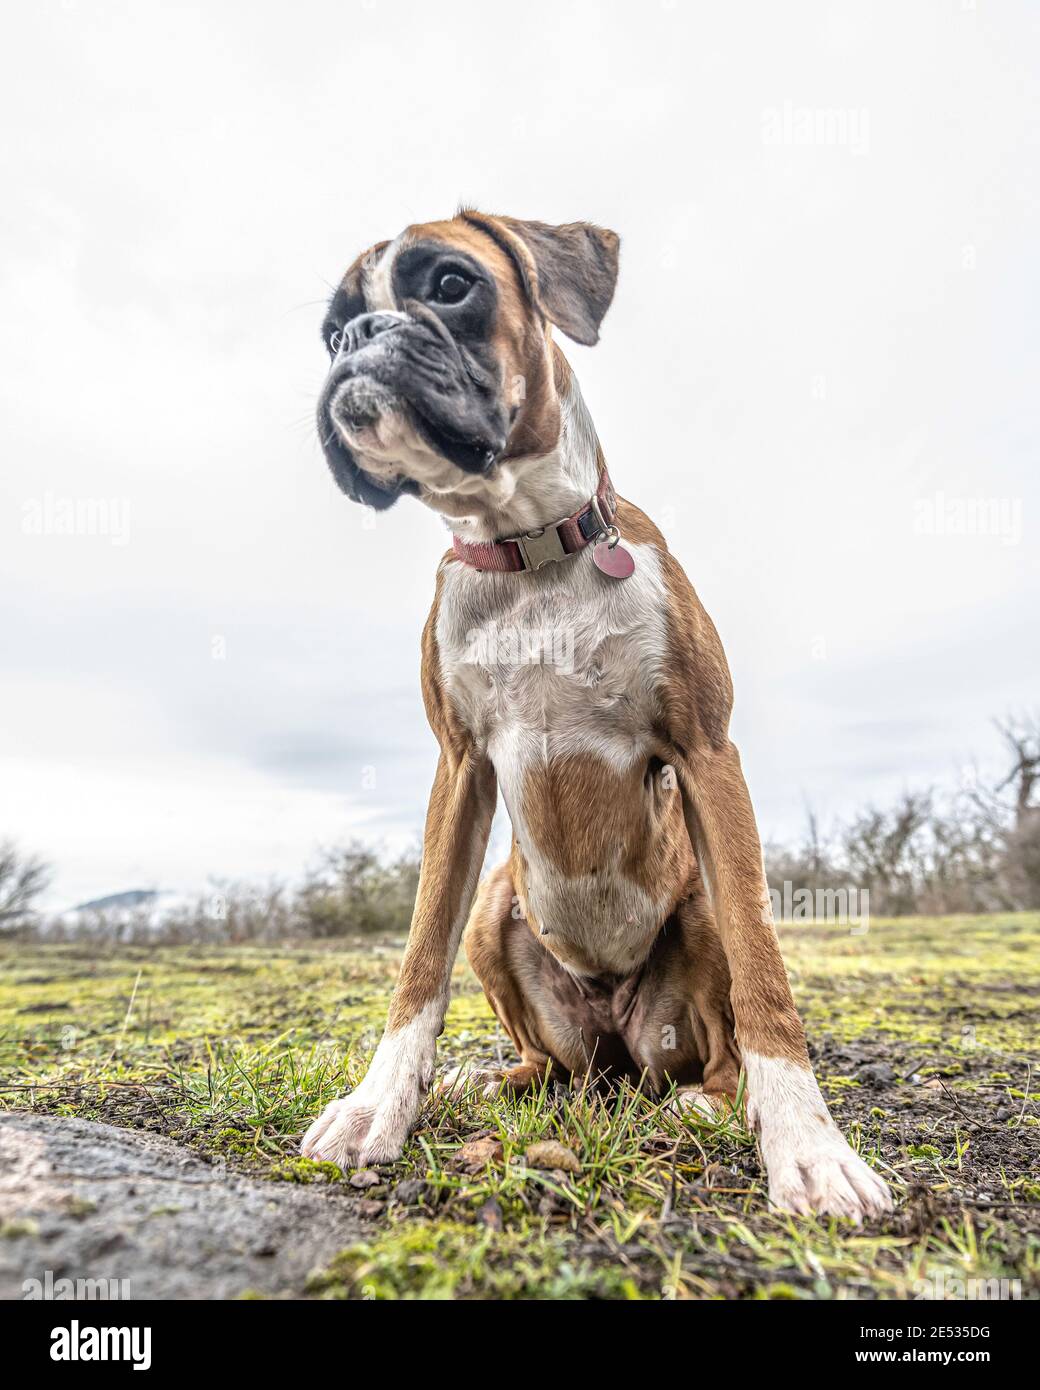 Lustiges Gesicht 9 Monate alt reinrassig golden Welpen deutsche Boxer Hund  Nahaufnahme Stockfotografie - Alamy